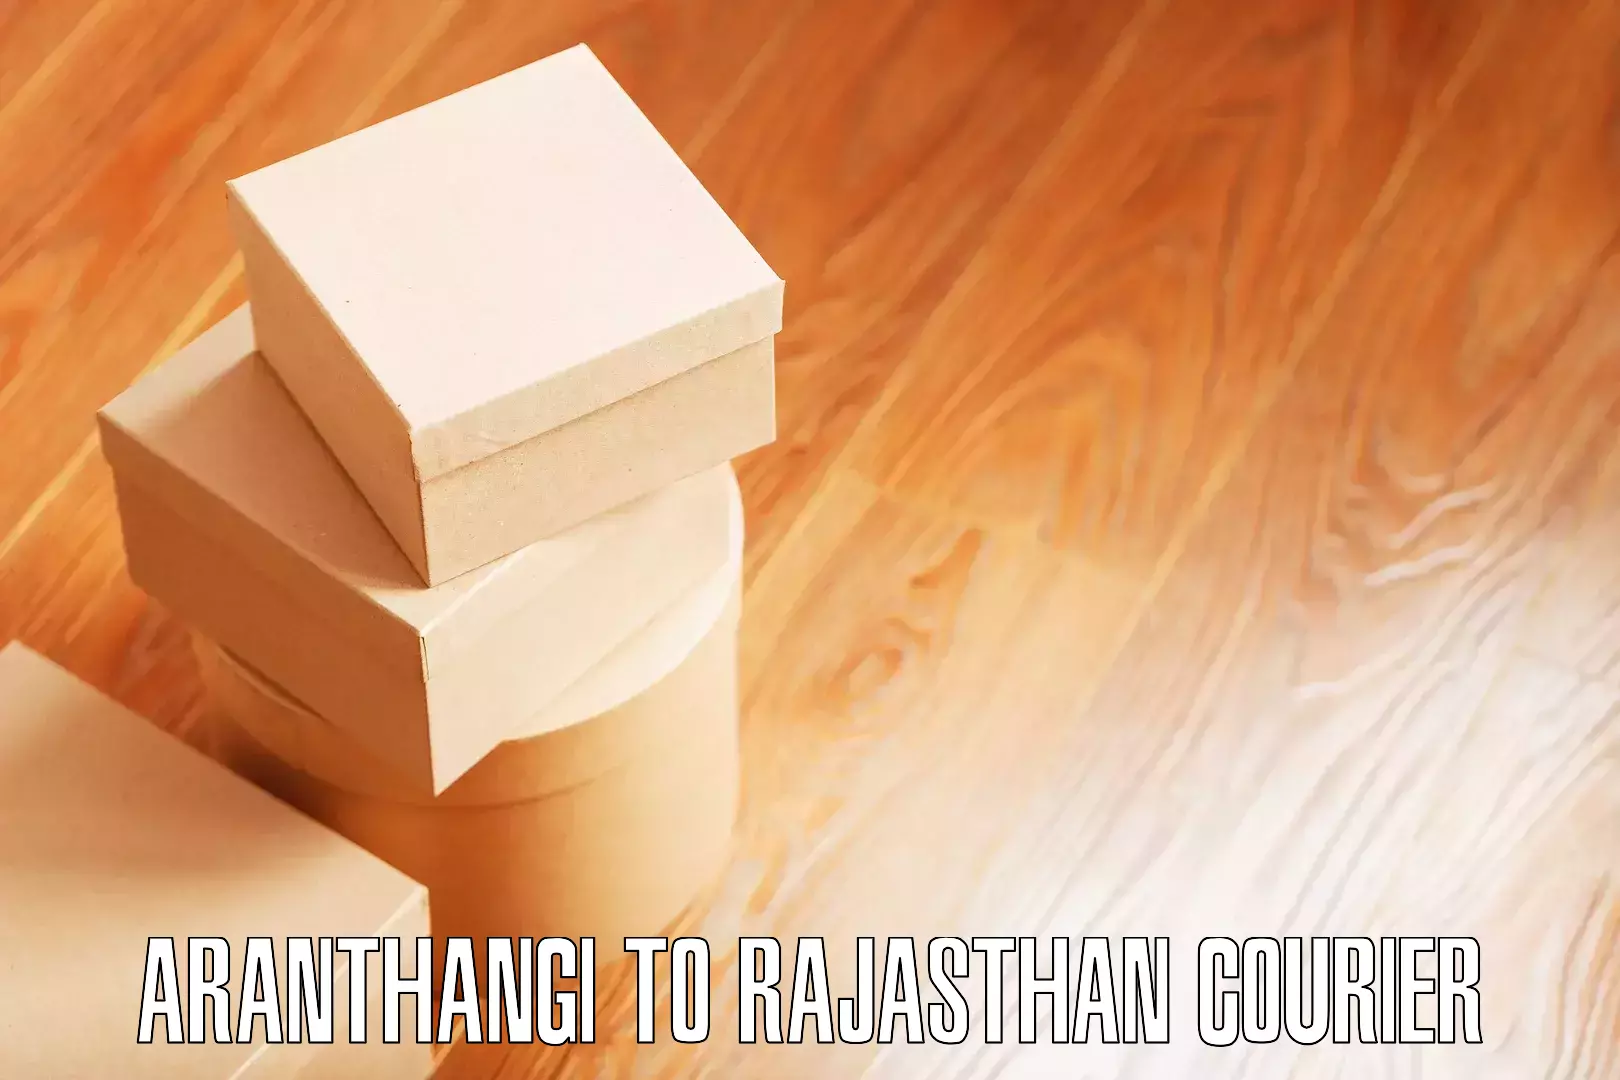 Personalized moving plans Aranthangi to Pratapgarh Rajasthan